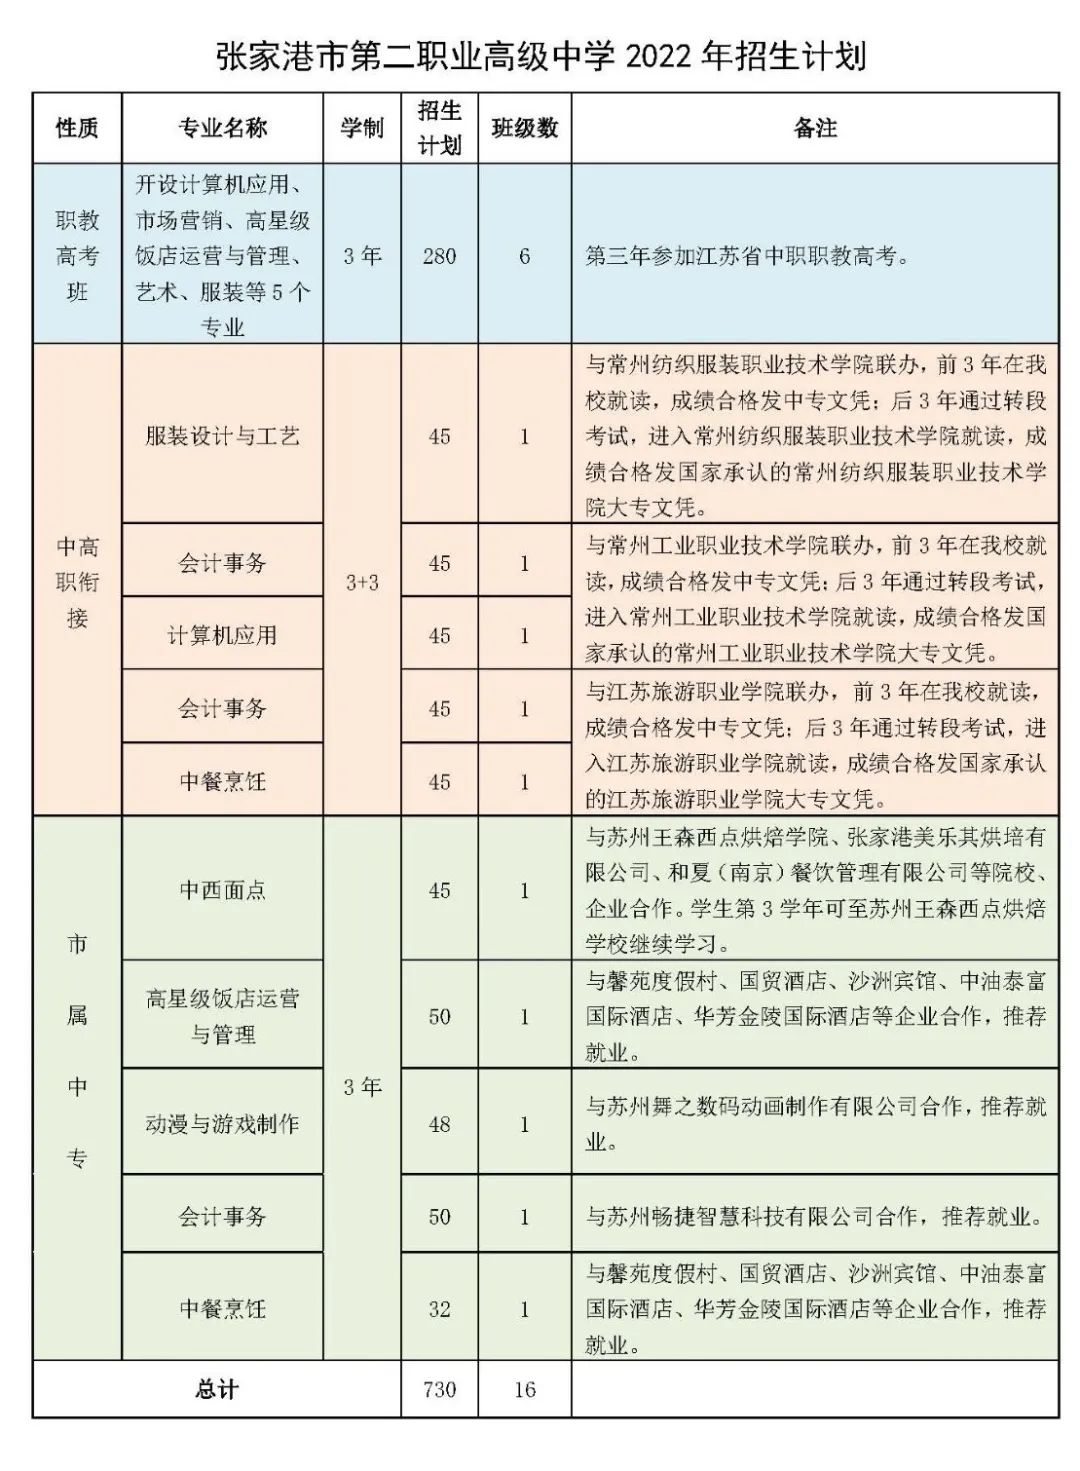  张家港市第二职业高级中学2022年招生简章